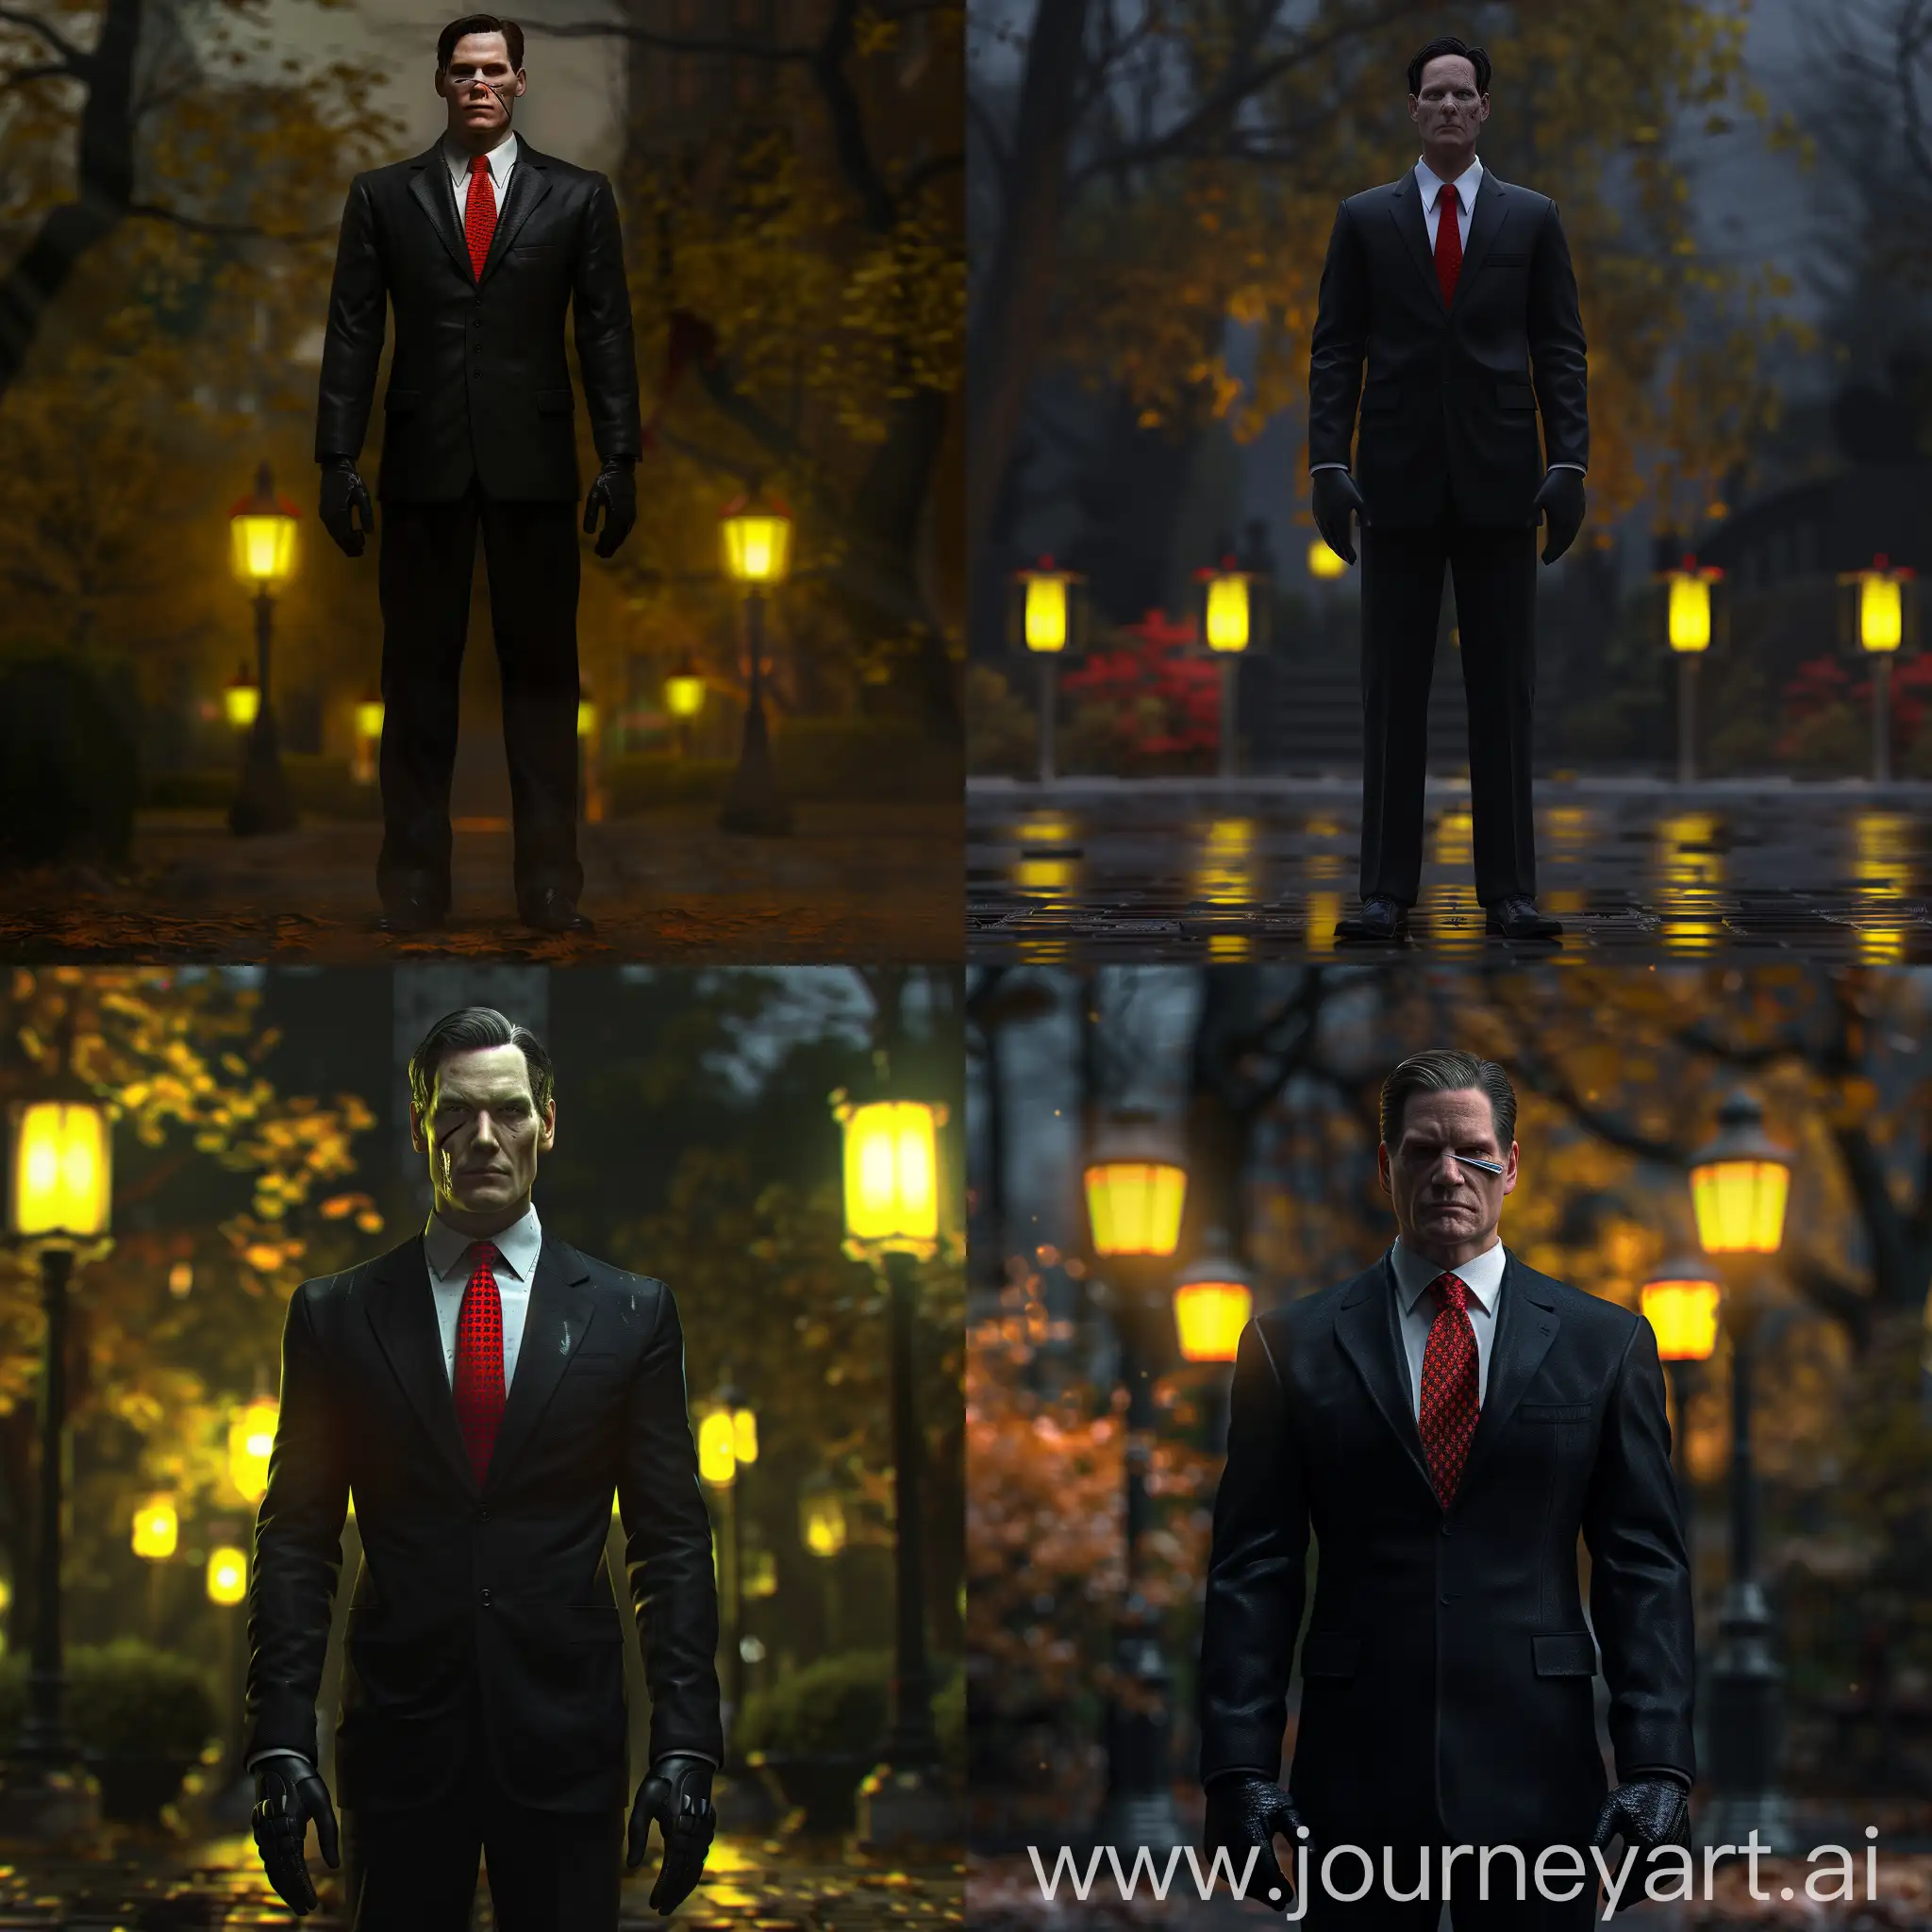 patrick Bateman стоит в черном костюме, красный галстук без узоров, 8к, супер детализация, гипер реализм, острый фокус, максимум деталей, задний фон ночной парк, желтый свет фонарей, профессиональное освещение, черные перчатки